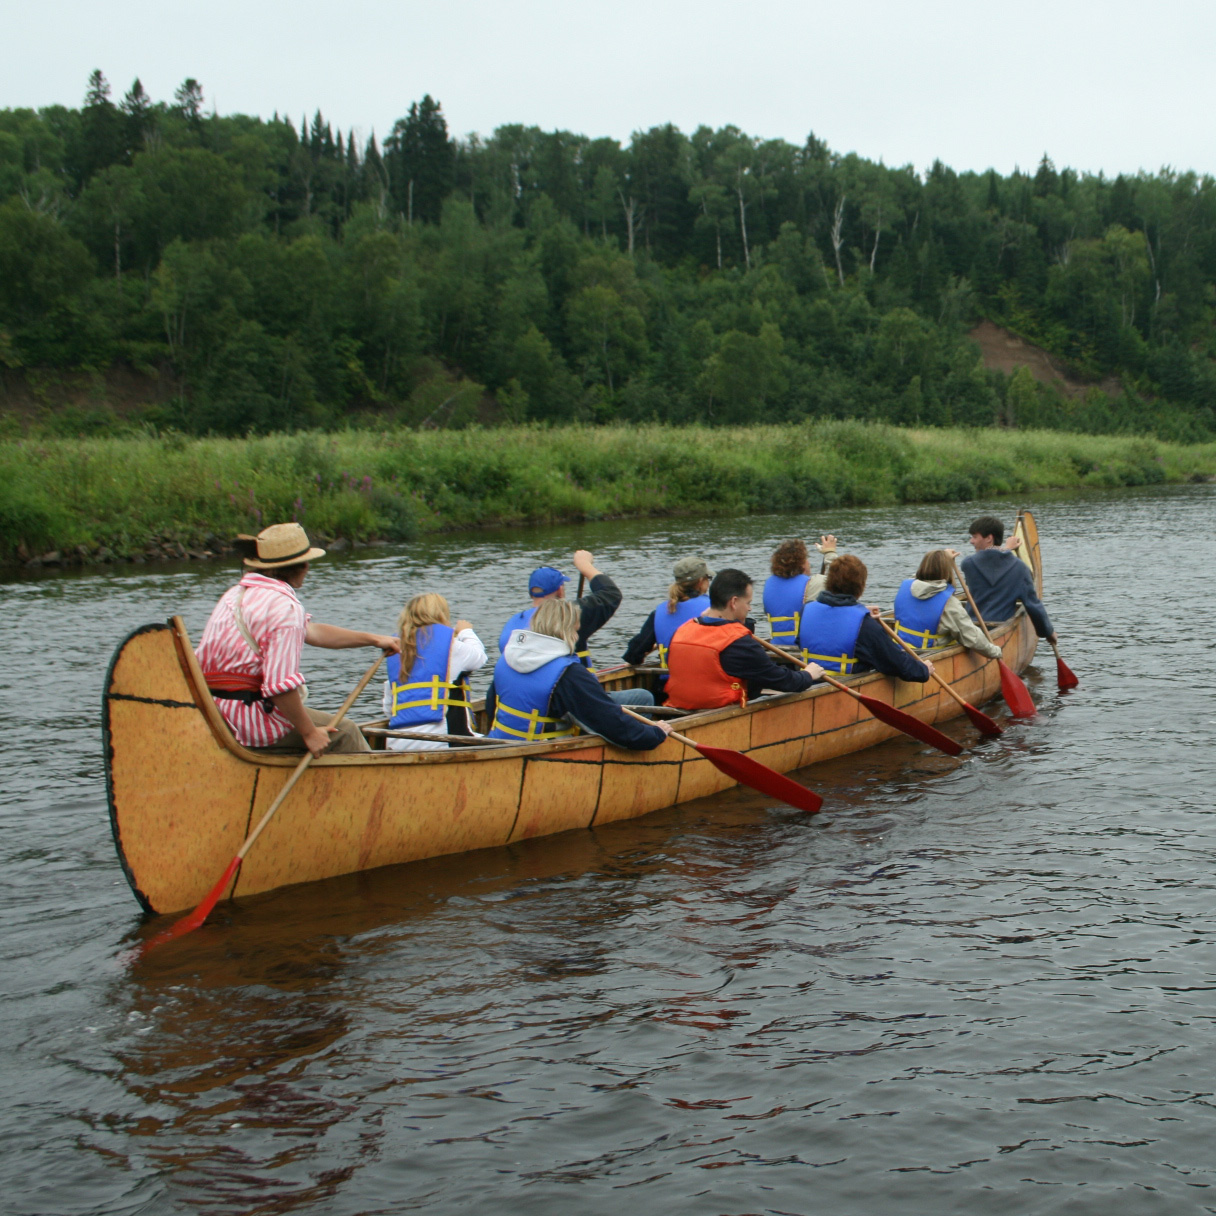 Un groupe de personnes pagayant sur un canot historique